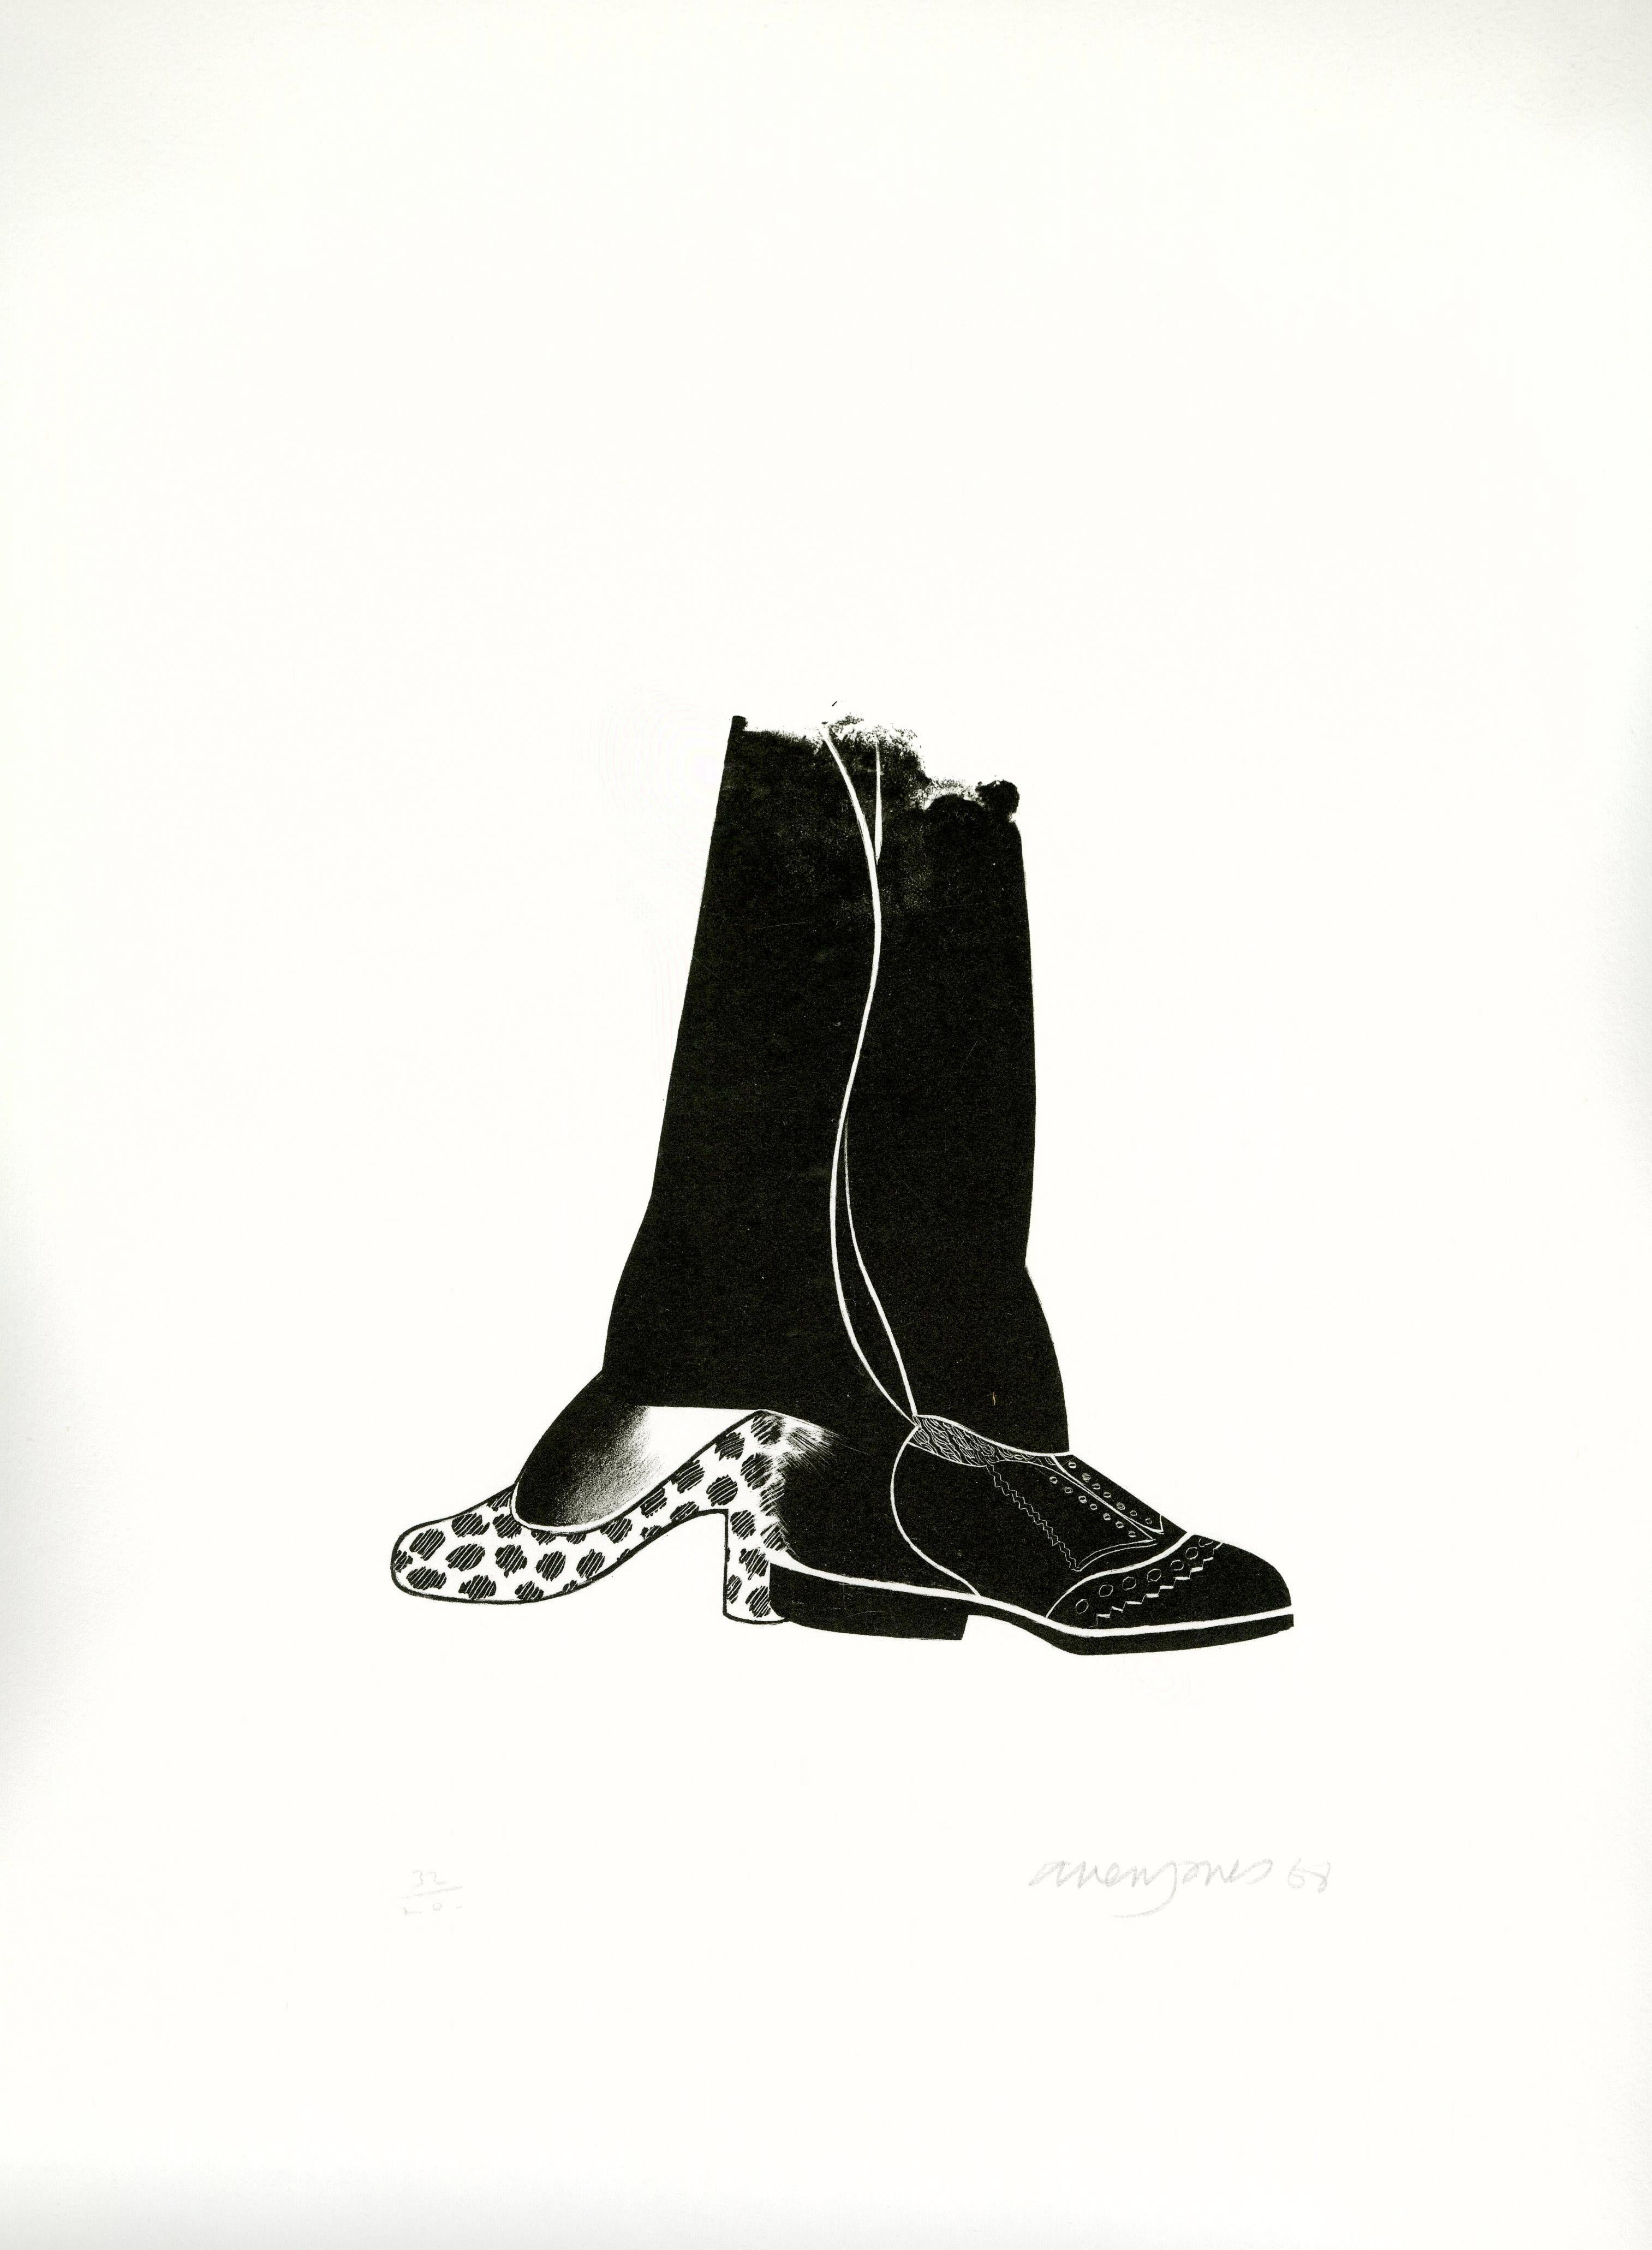 Shoe Box (C) - Print by Allen Jones